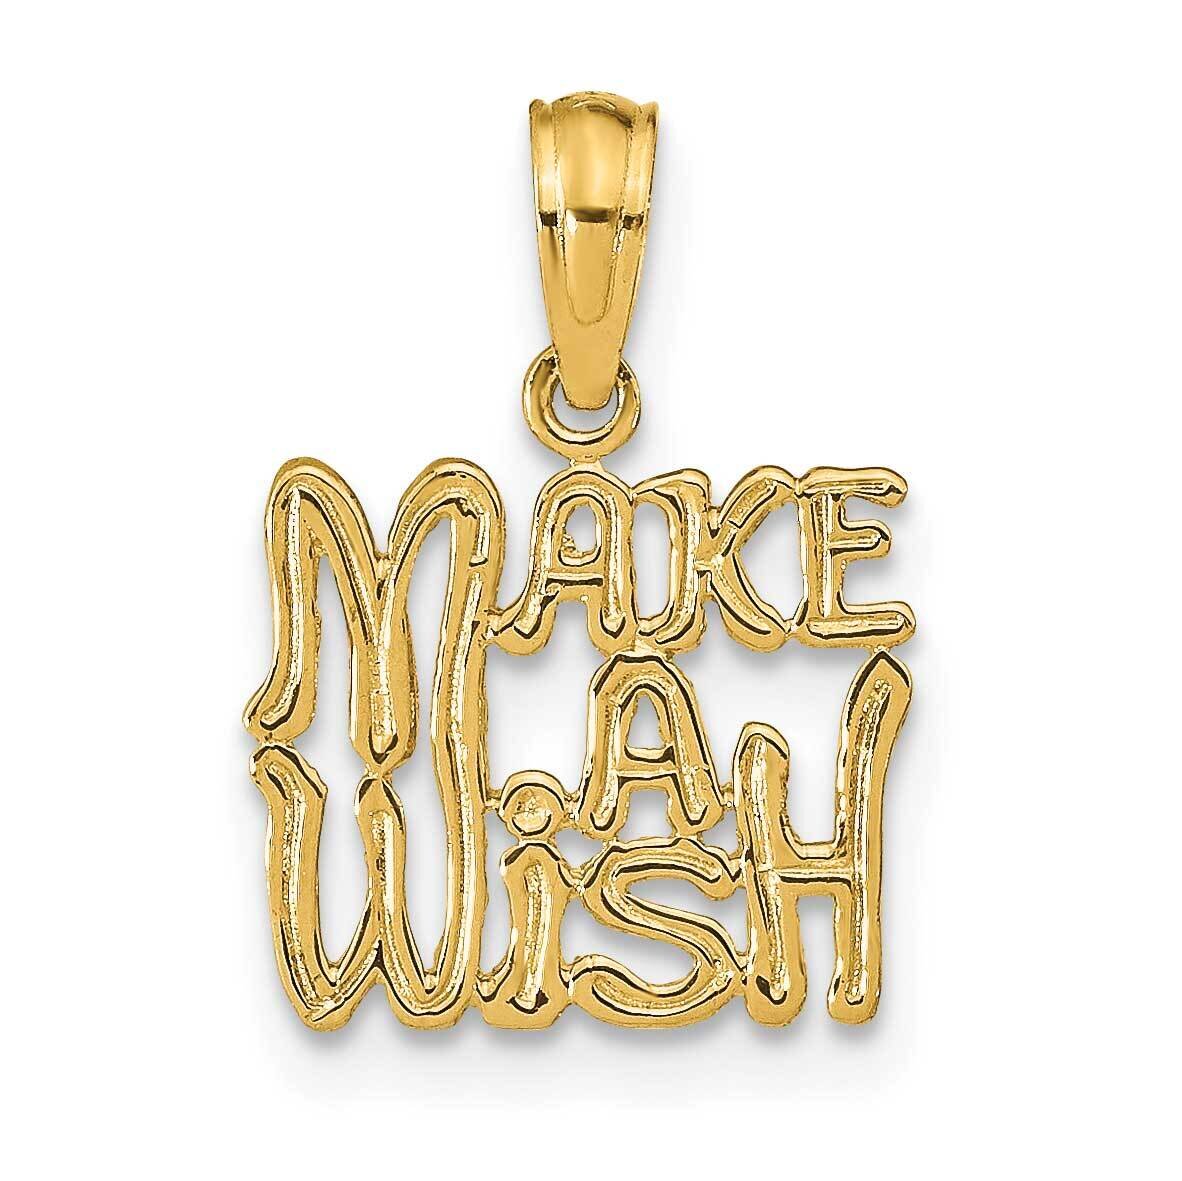 Make A Wish Pendant 14k Gold K9759